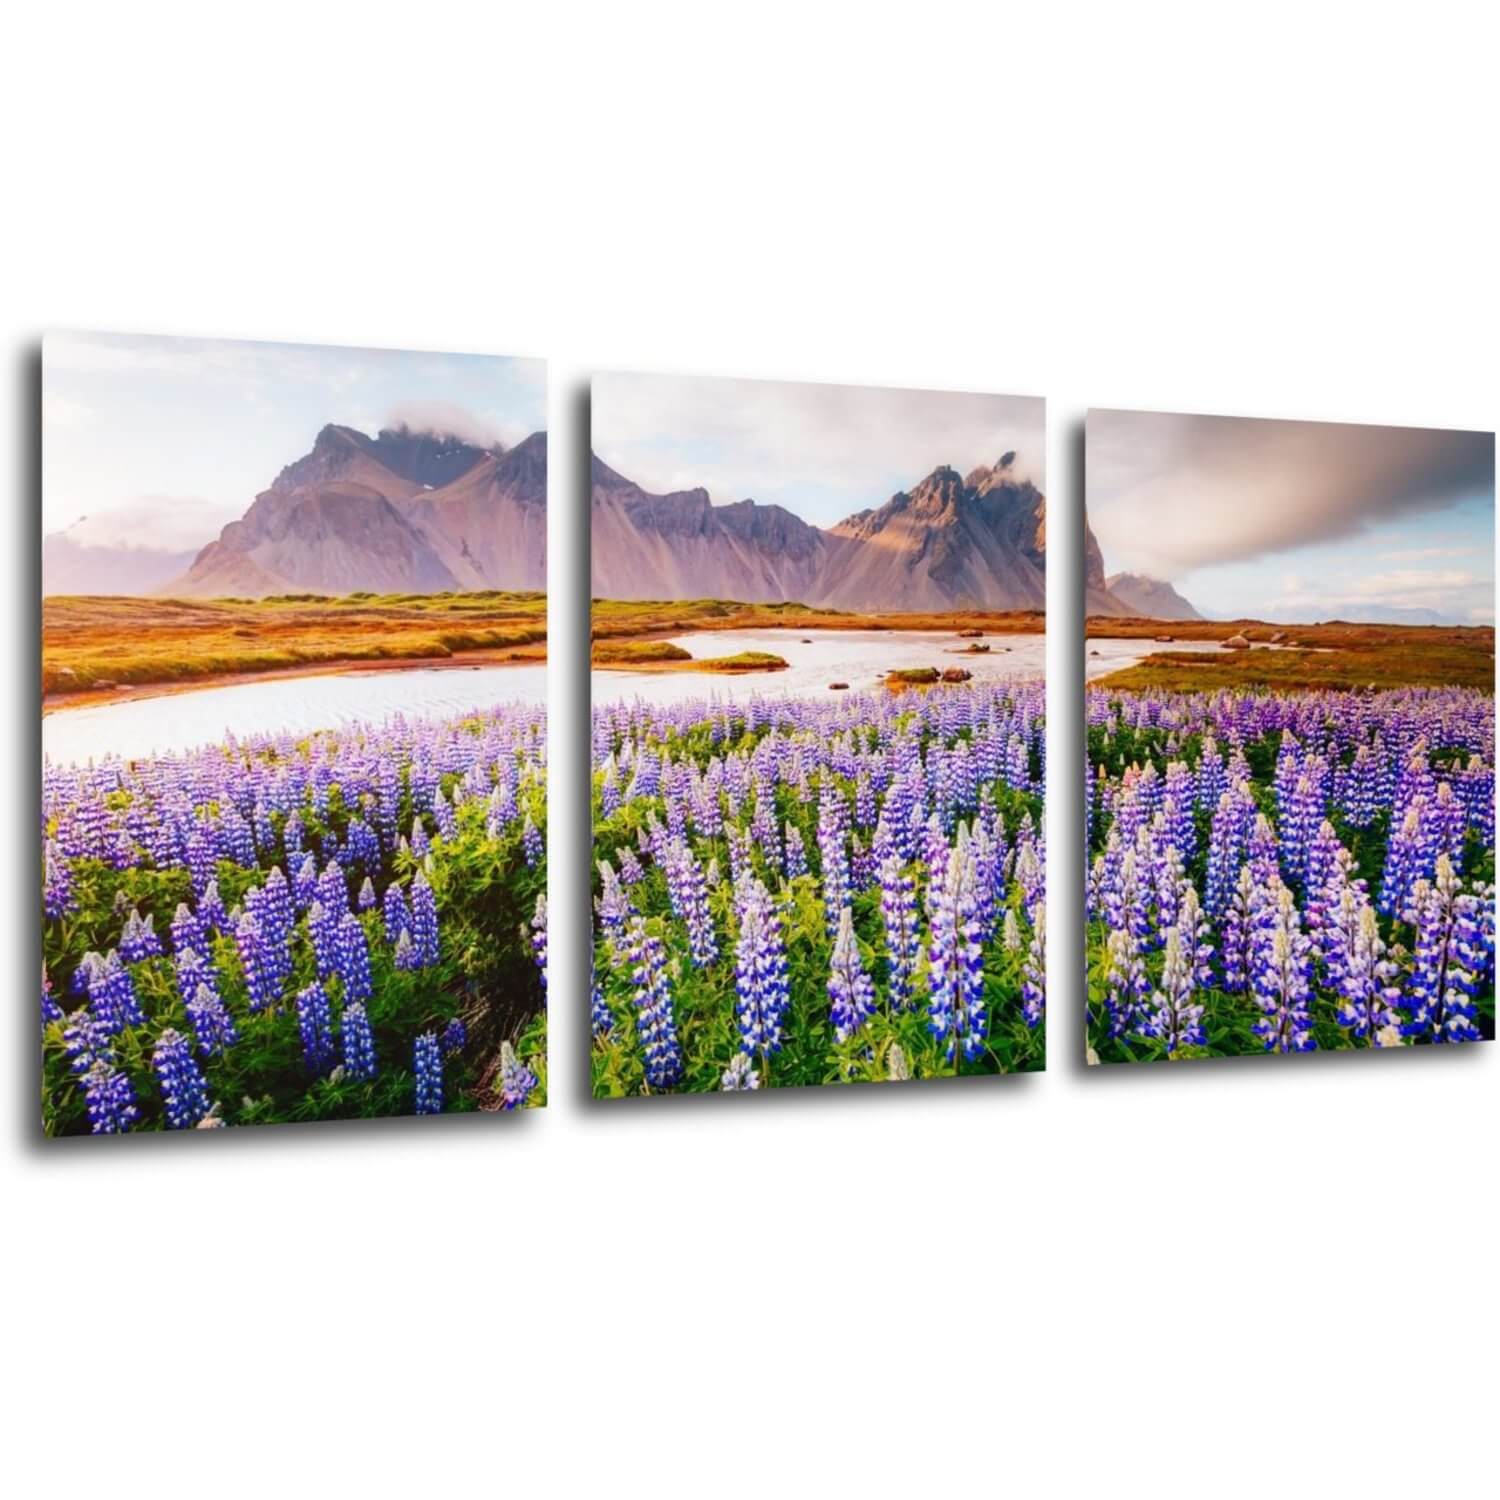 Obraz Horská krajina s květinami - 150 x 70 cm (3 dílný)